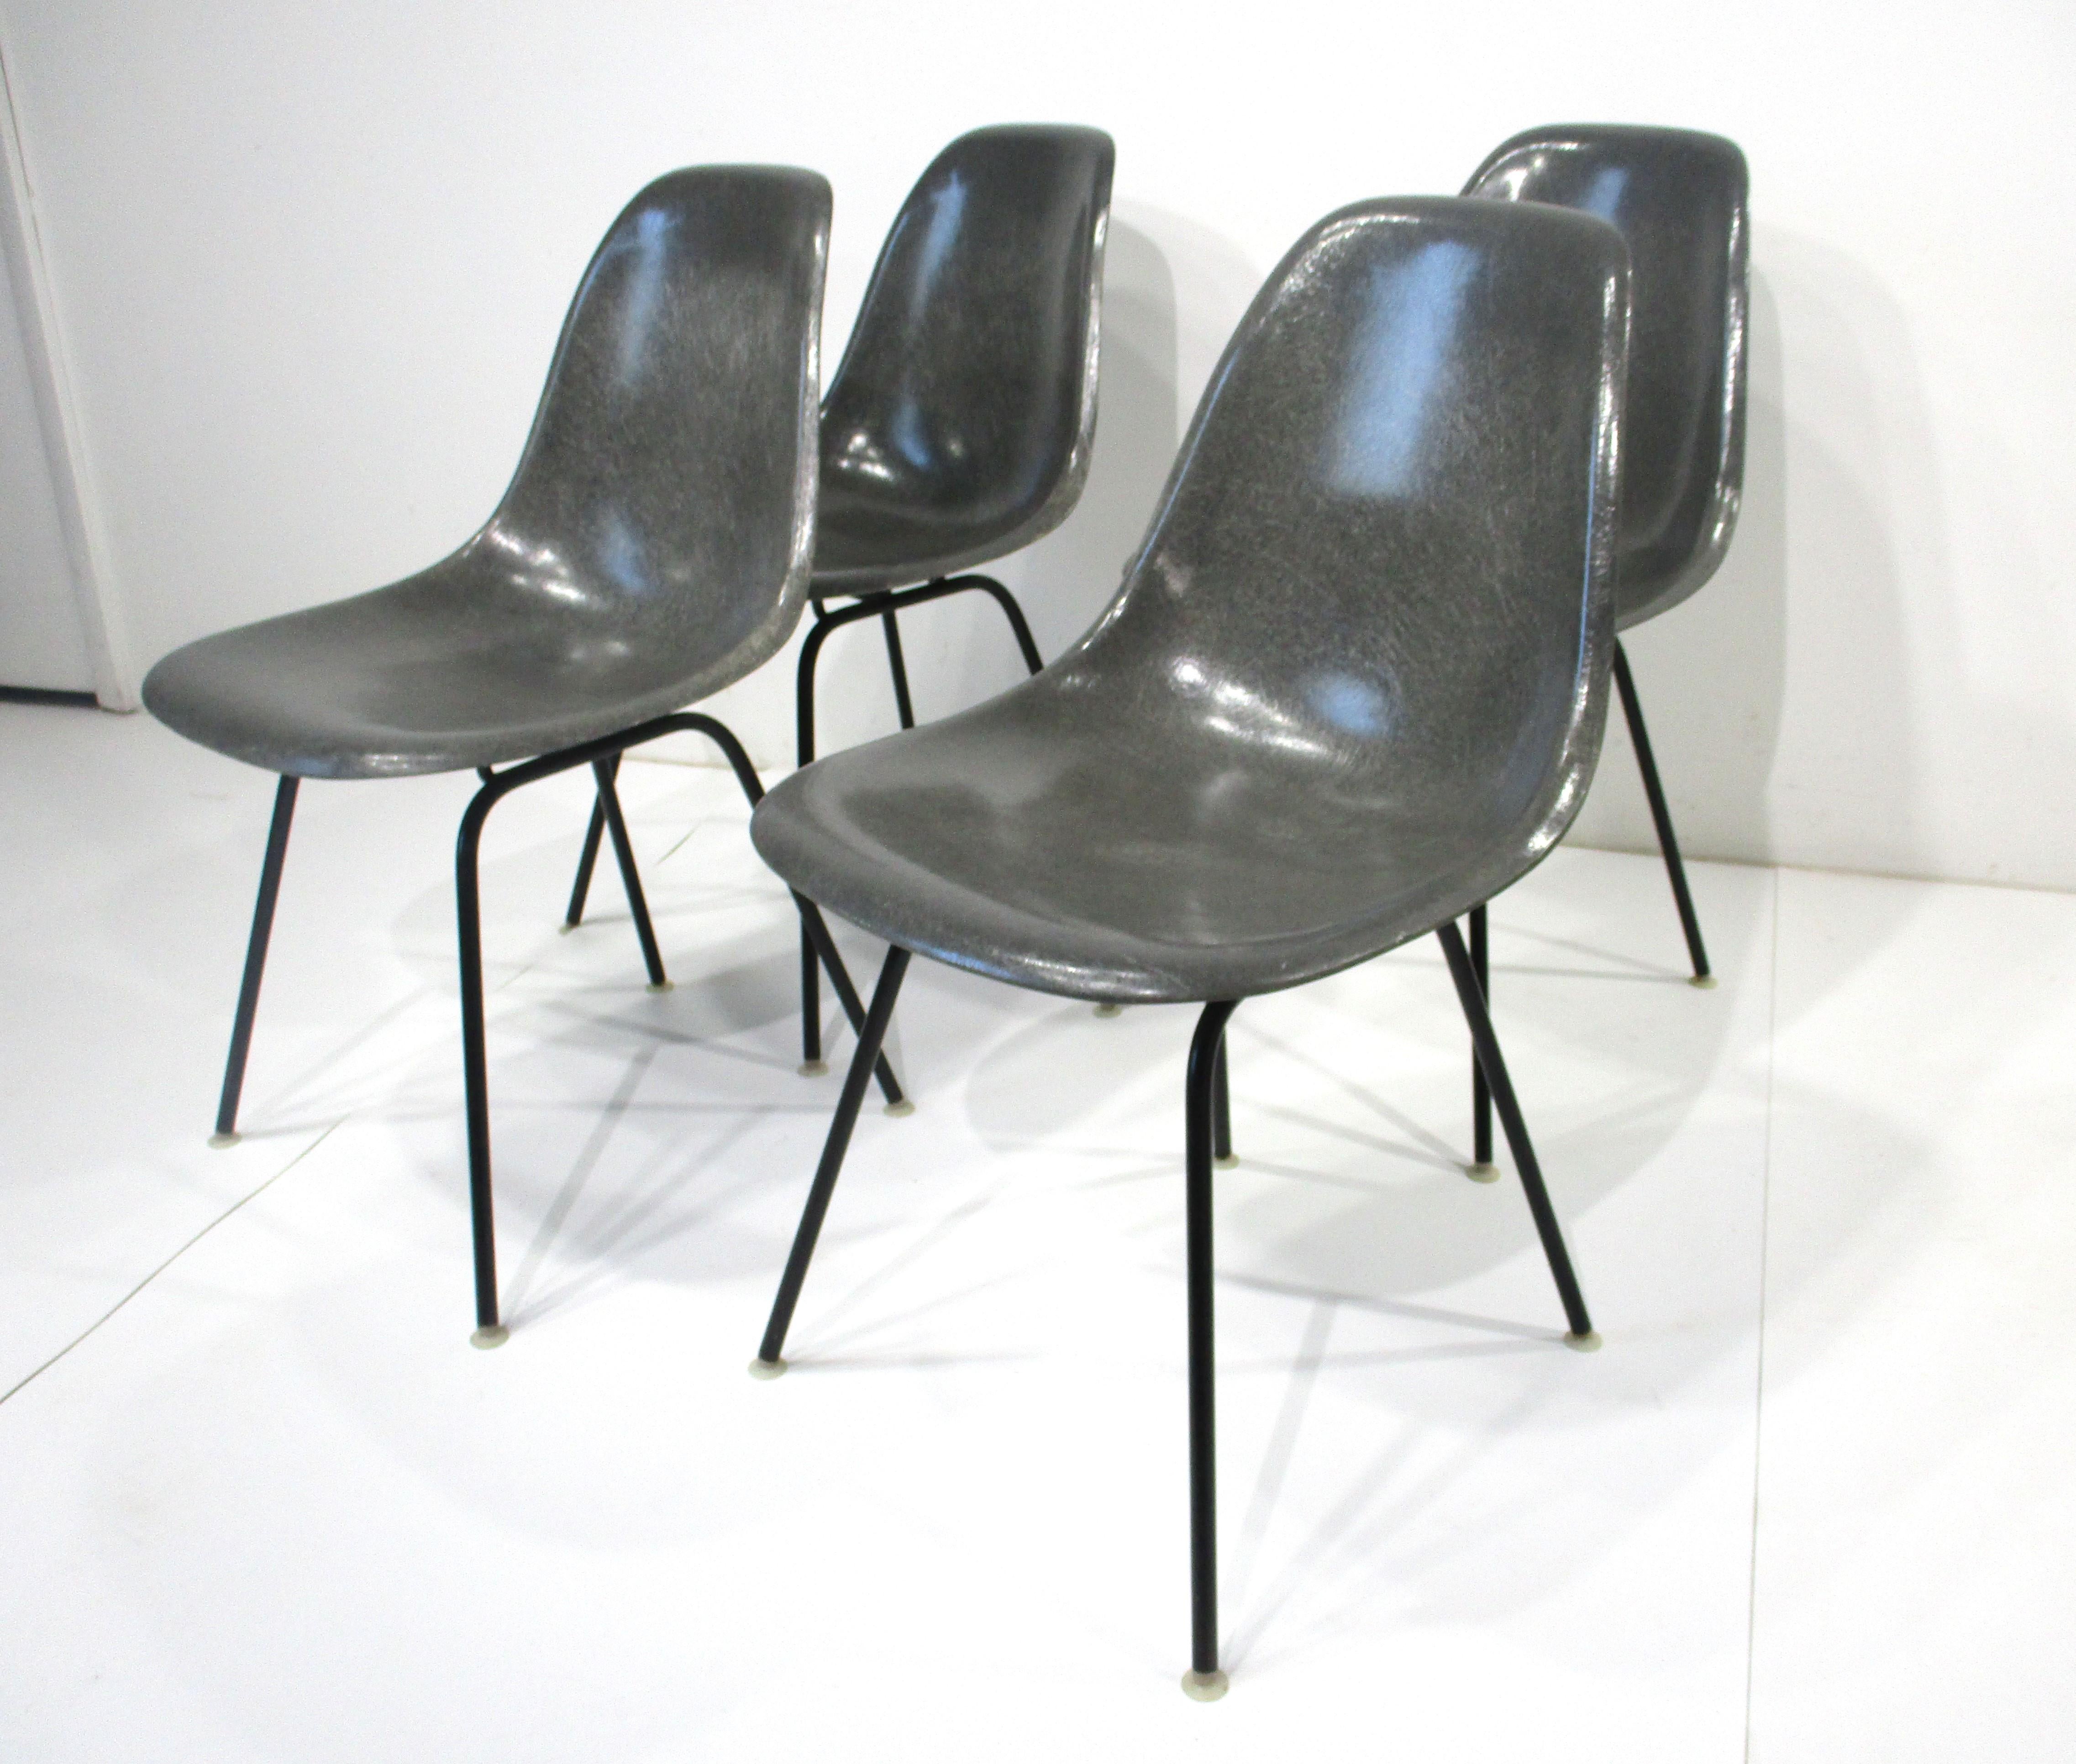 Un ensemble de quatre chaises de salle à manger en fibre de verre gris peau d'éléphant avec des bases en H en métal noir satiné ayant des pieds en nylon pour protéger vos sols. Conçue par l'équipe emblématique du milieu du siècle de Ray et Charles